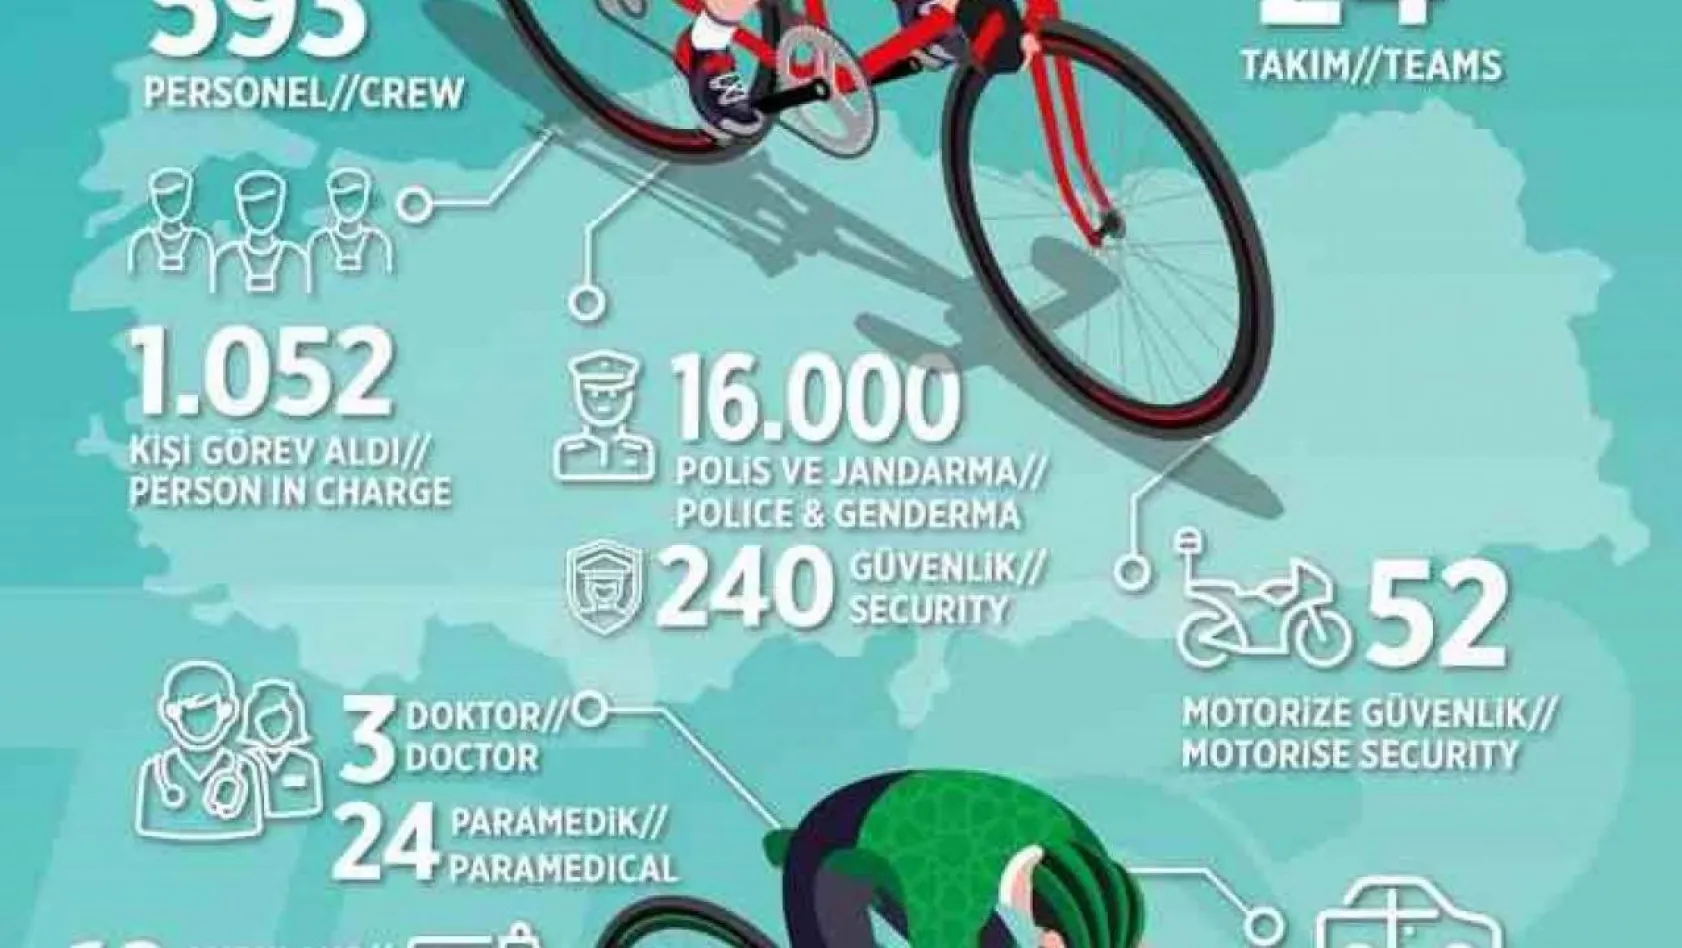 58. Cumhurbaşkanlığı Türkiye Bisiklet Turu, tüm dünyada izlendi